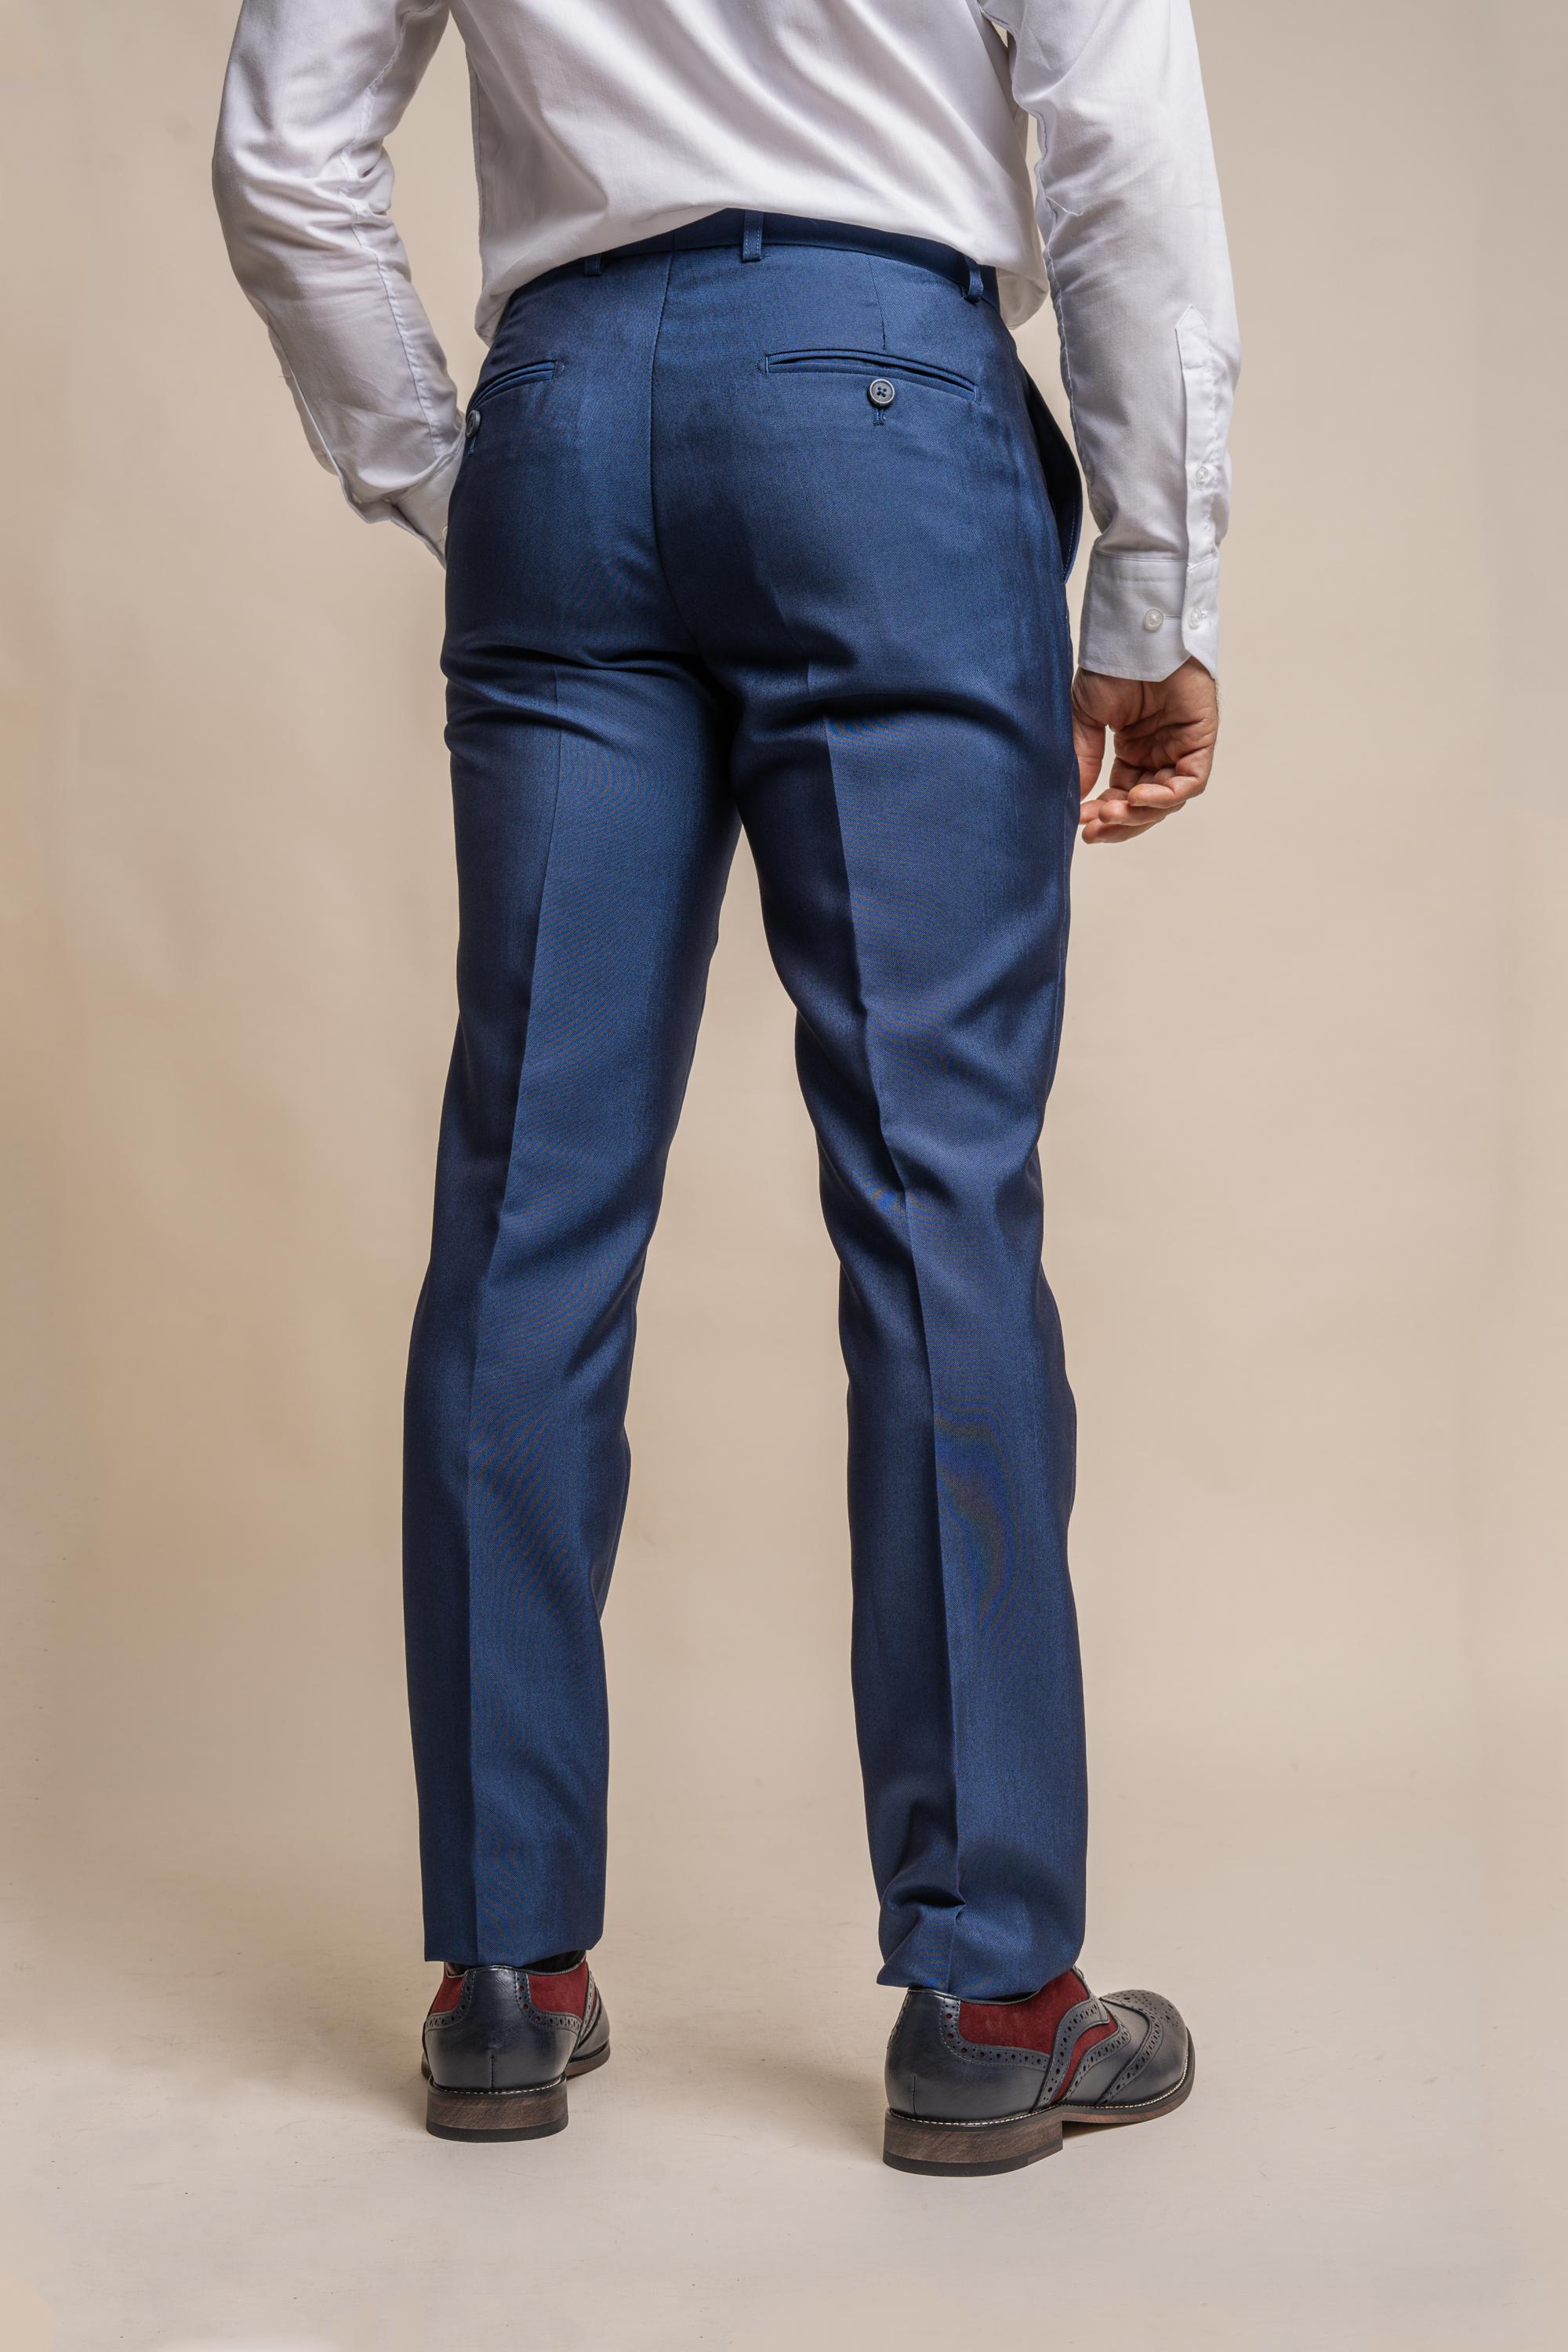 Men's Slim Fit Formal Trousers, Formal Pants for Men, Regular Fit, Lightweight